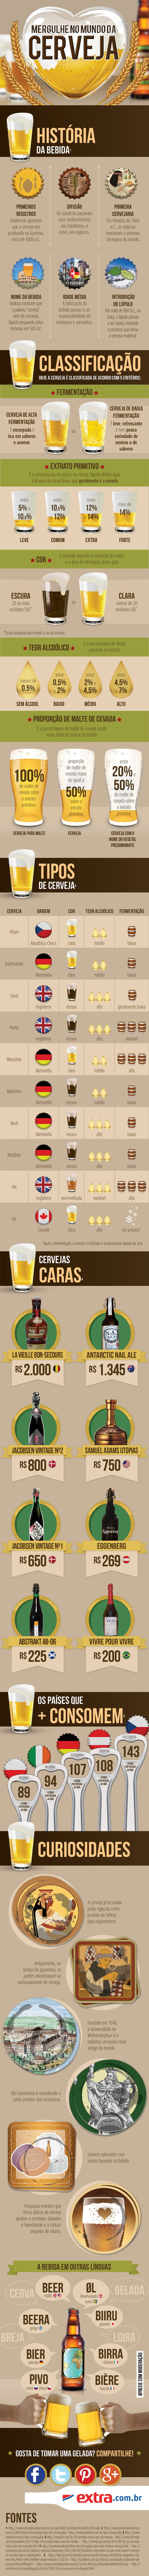 infografico-cerveja